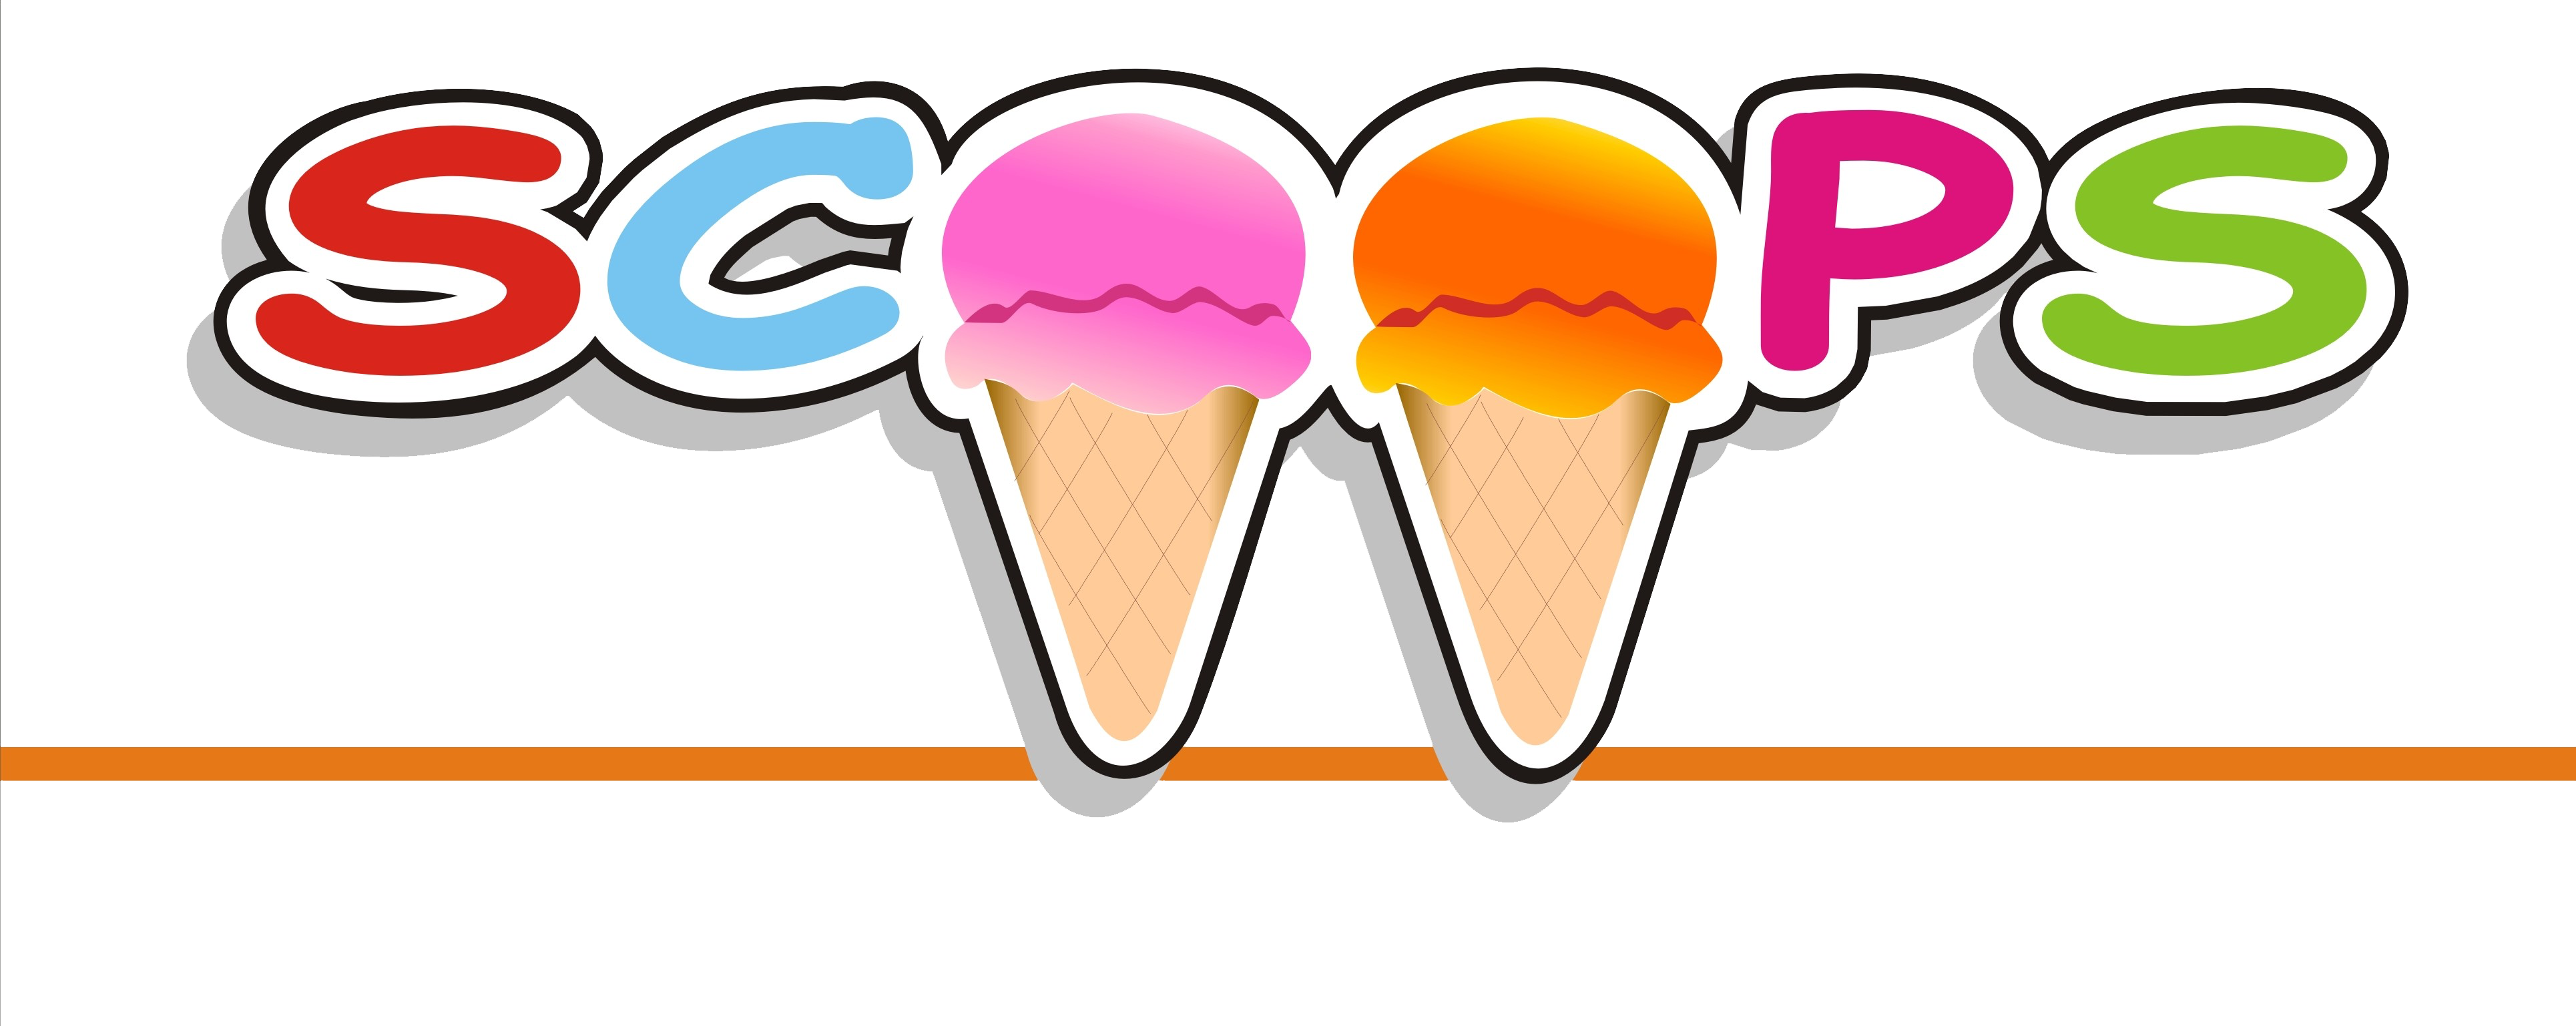 The Original Scoops - Scoops Ice Cream Logo (3859x1537)